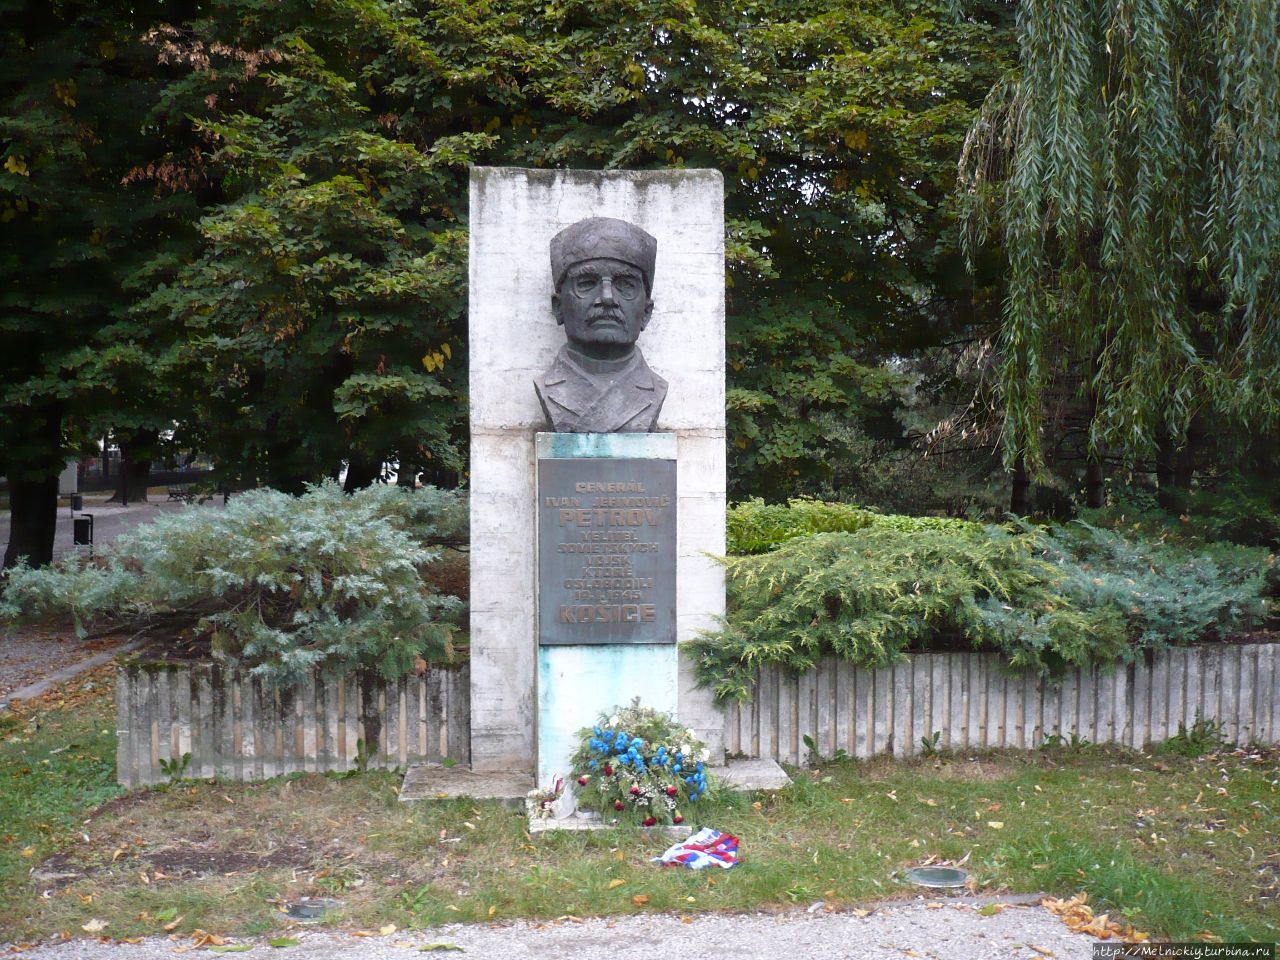 Бюст генерала Петрова И.Е. / Bust of General Petrov I.E.